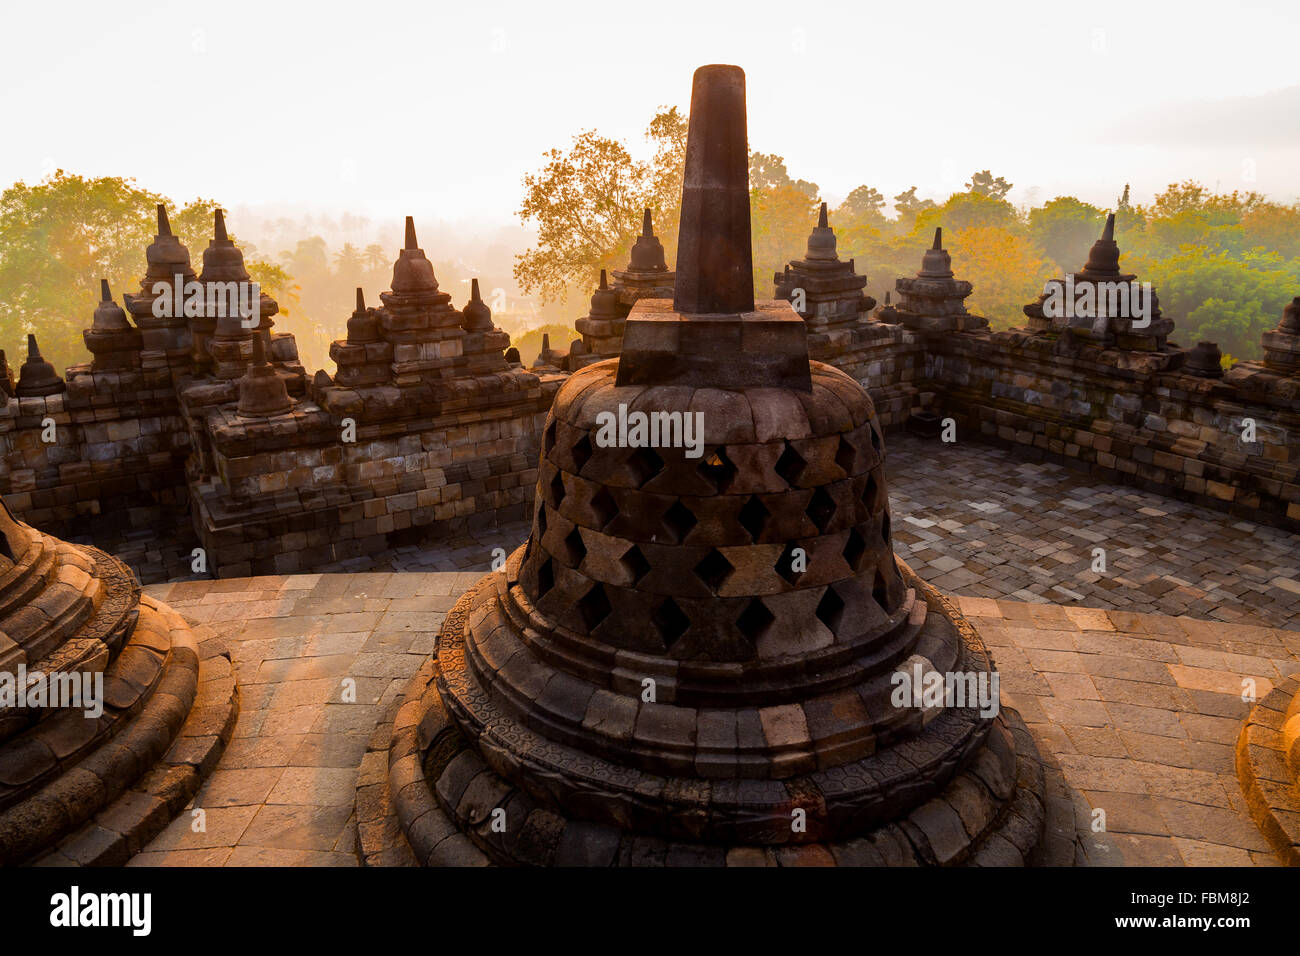 Las hermosas estupas del complejo del templo Borobudur, Yogyakarta, Indonesia. Borobudur es el templo budista más grande del mundo. Foto de stock